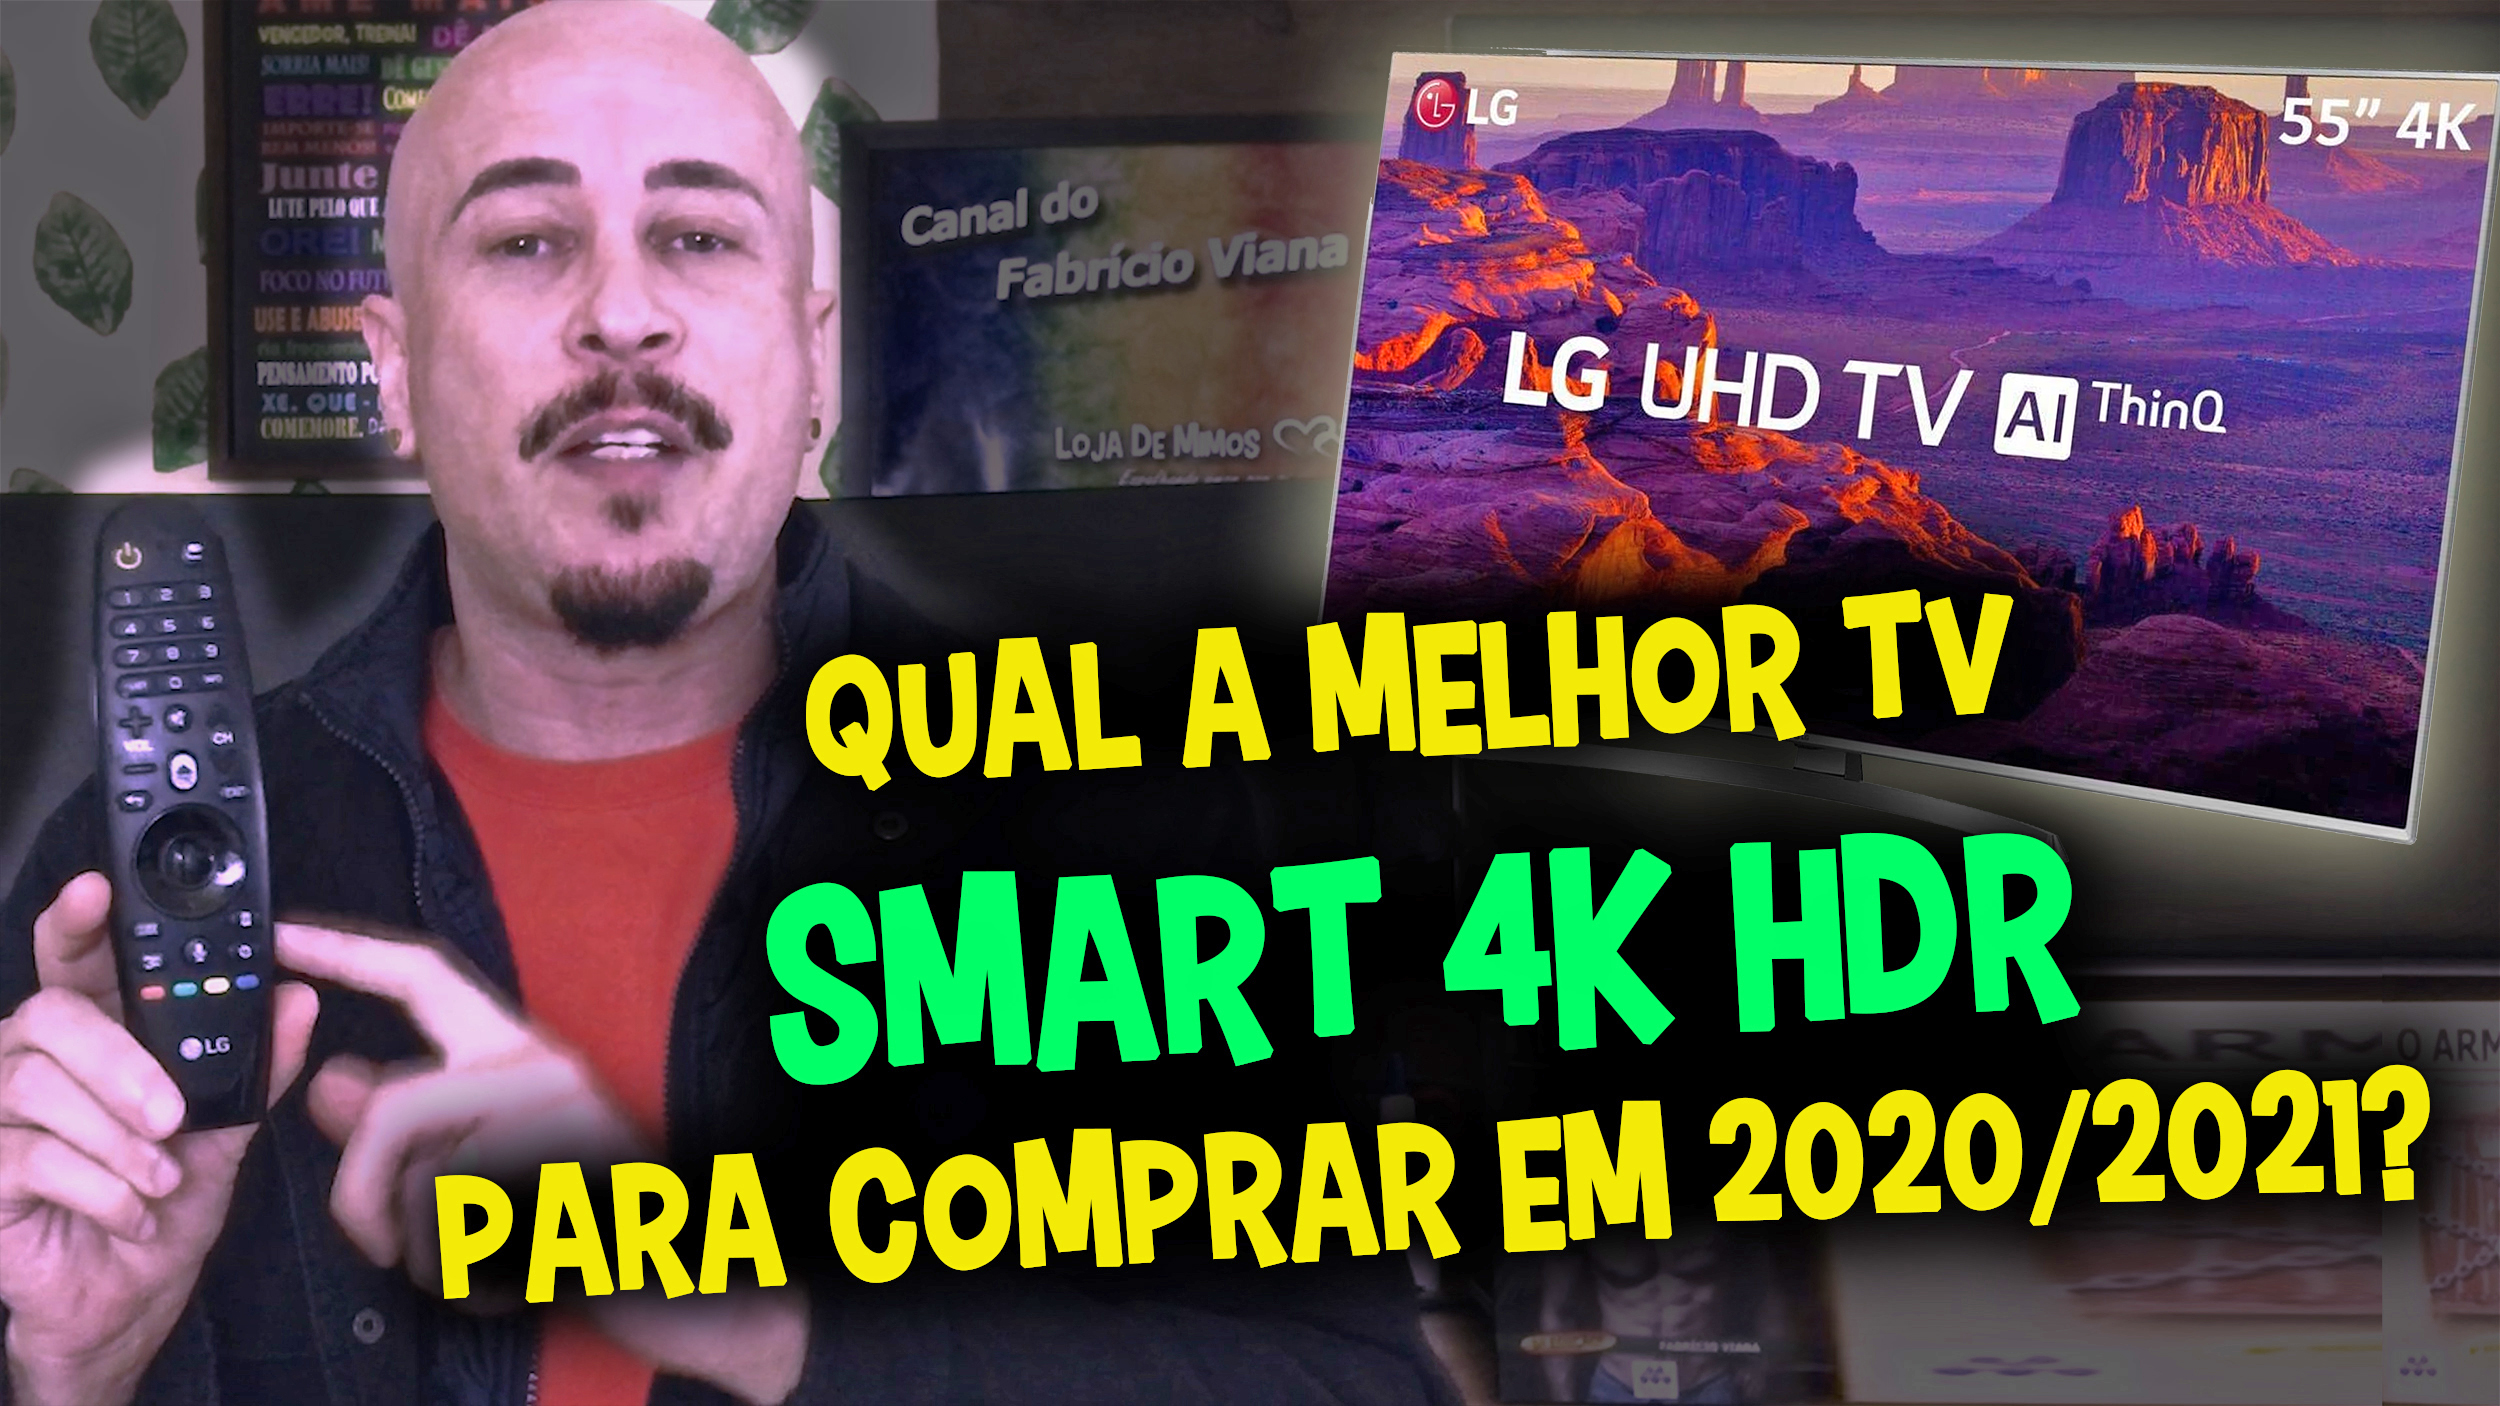 Qual a melhor TV Smart 4k HDR para comprar em 2020 ou 2021? Assista